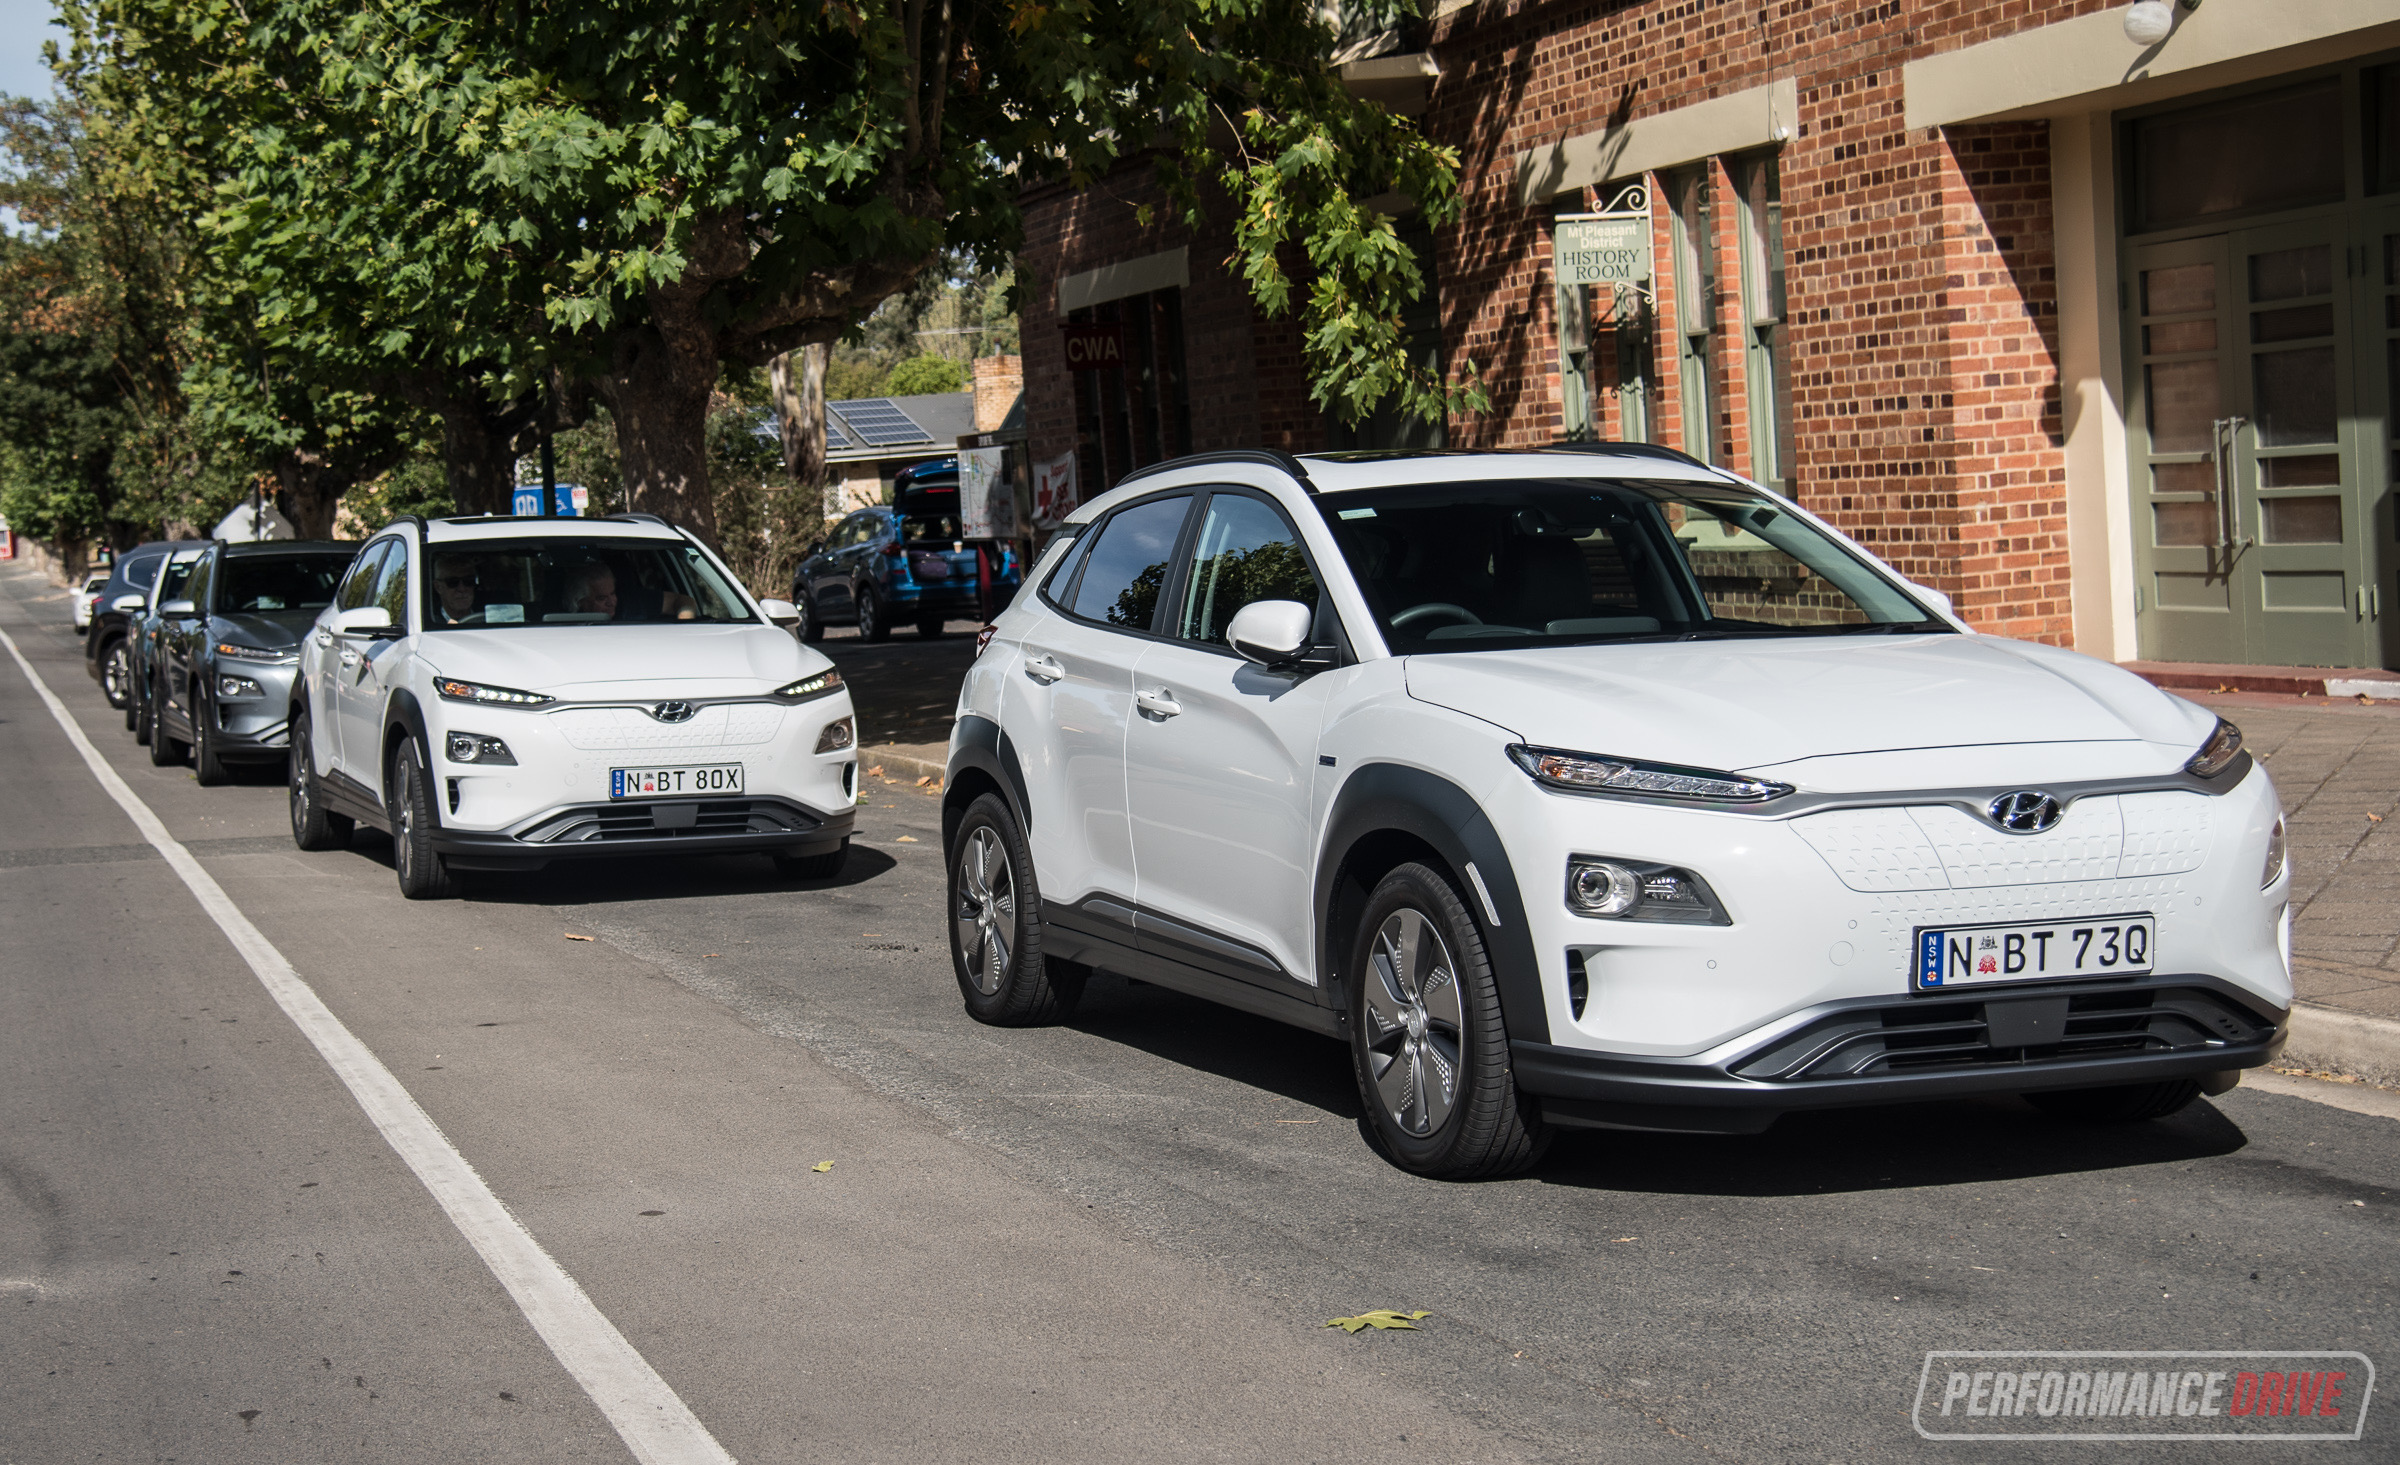 2019 Hyundai Kona Electric review – Australian launch (video)